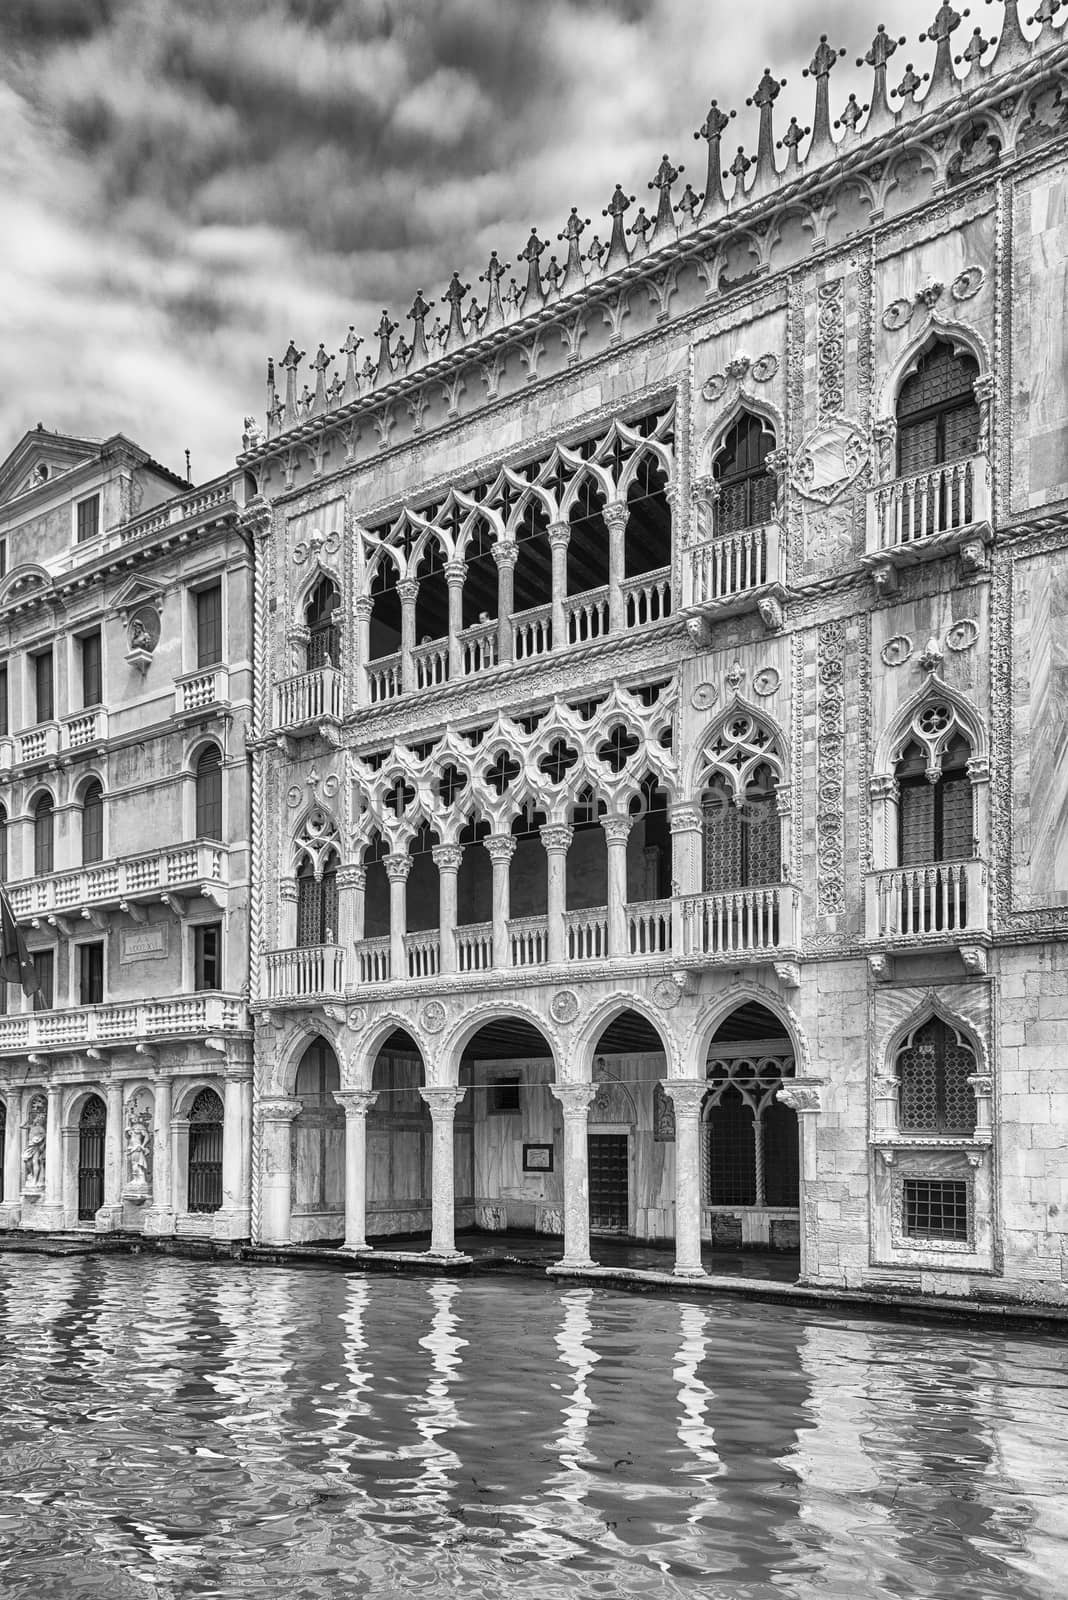 Facade of Palazzo Santa Sofia aka Ca D'Oro, Venice, Italy by marcorubino